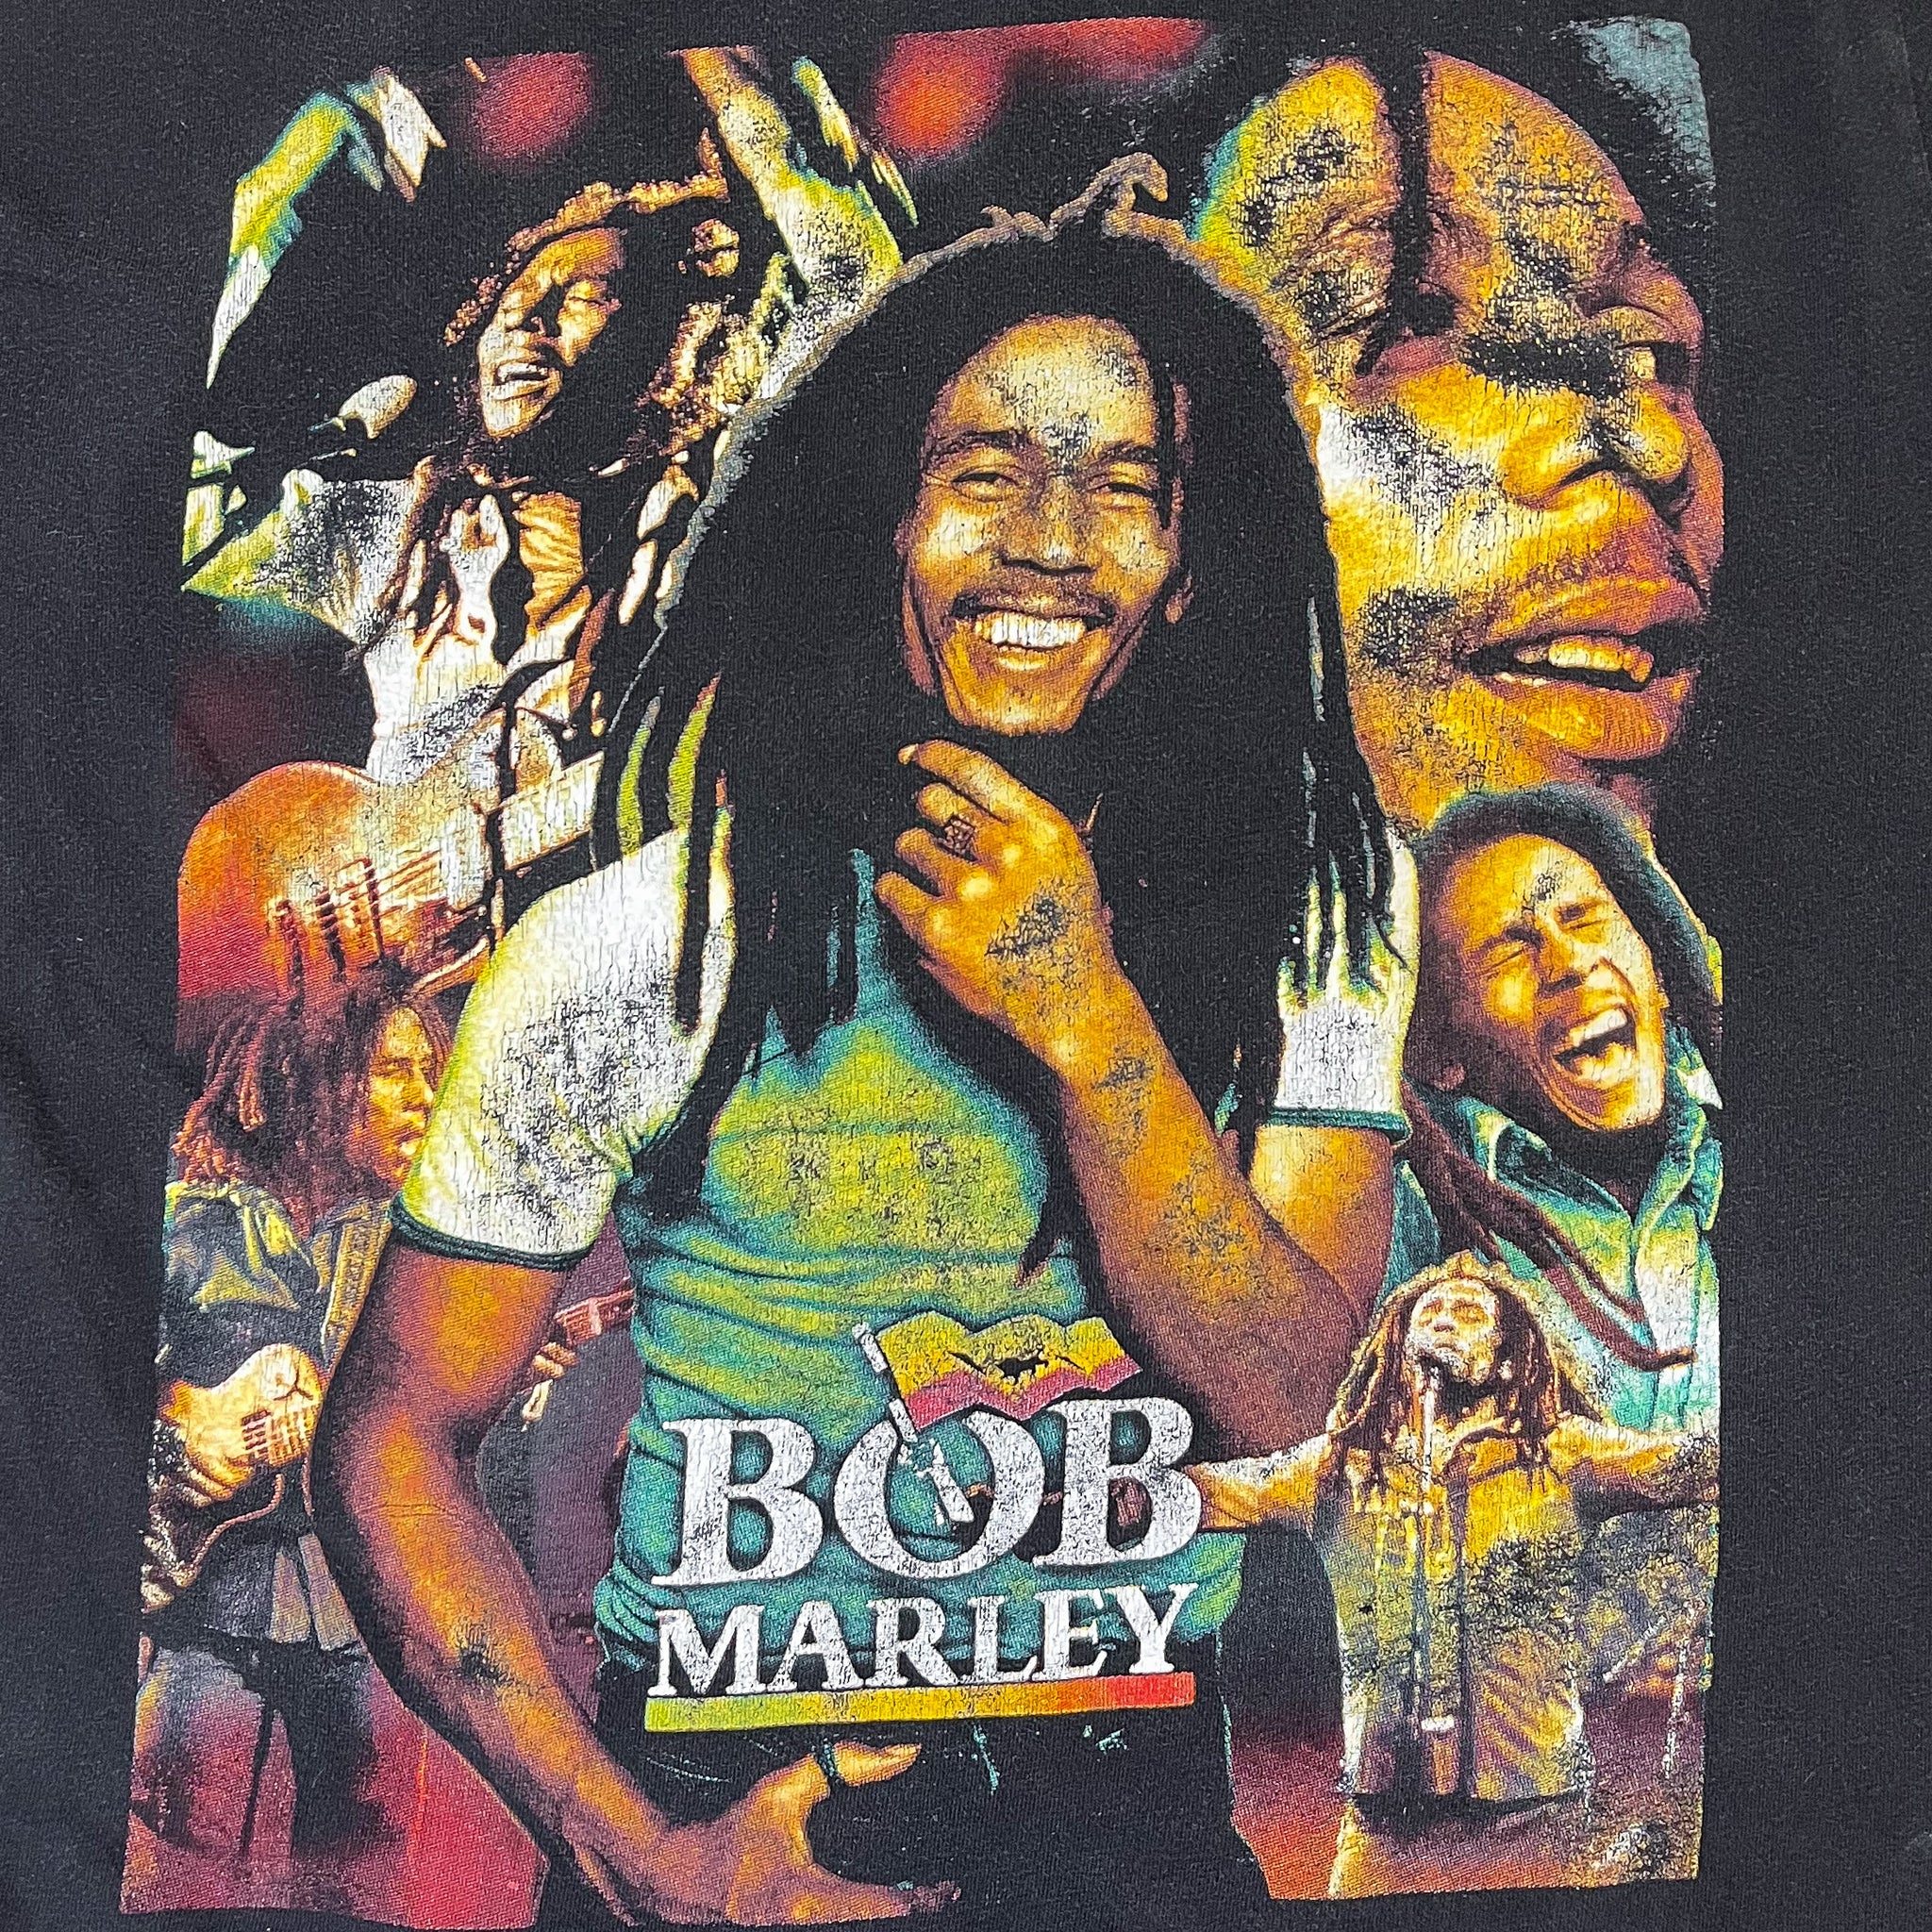 Bob Marley Vintage Bootleg Rap Tee “Uprising”